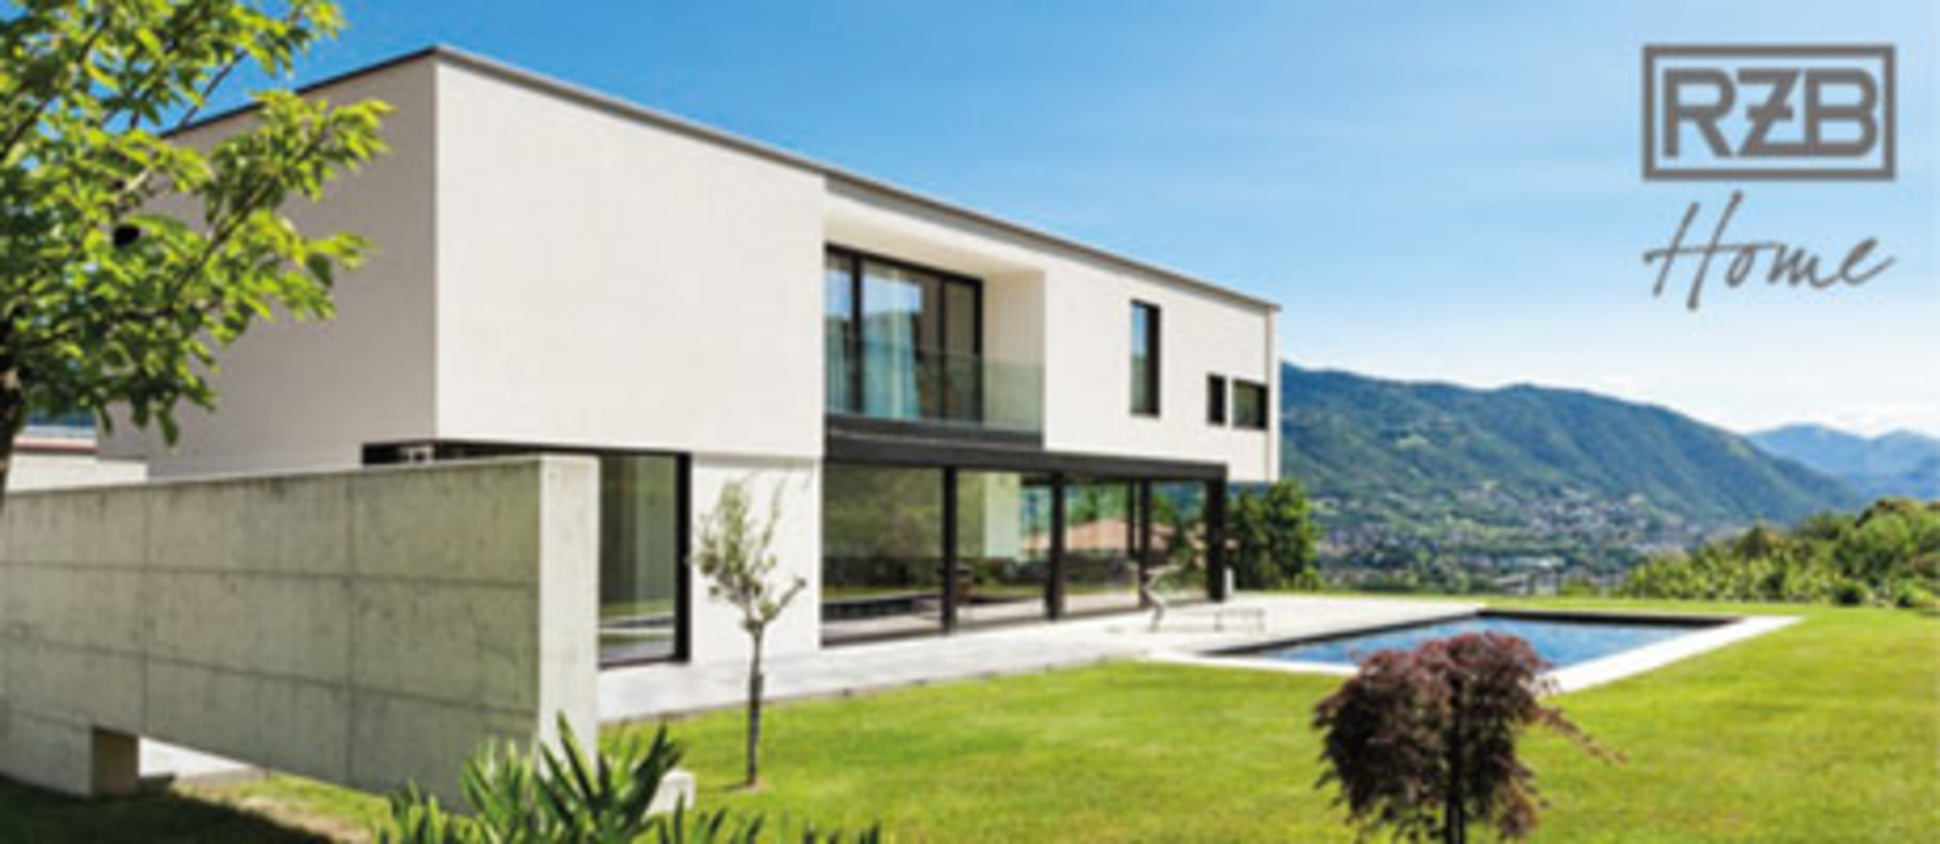 RZB Home + Basic bei BeKuLux GmbH & Co.KG in Riepsdorf